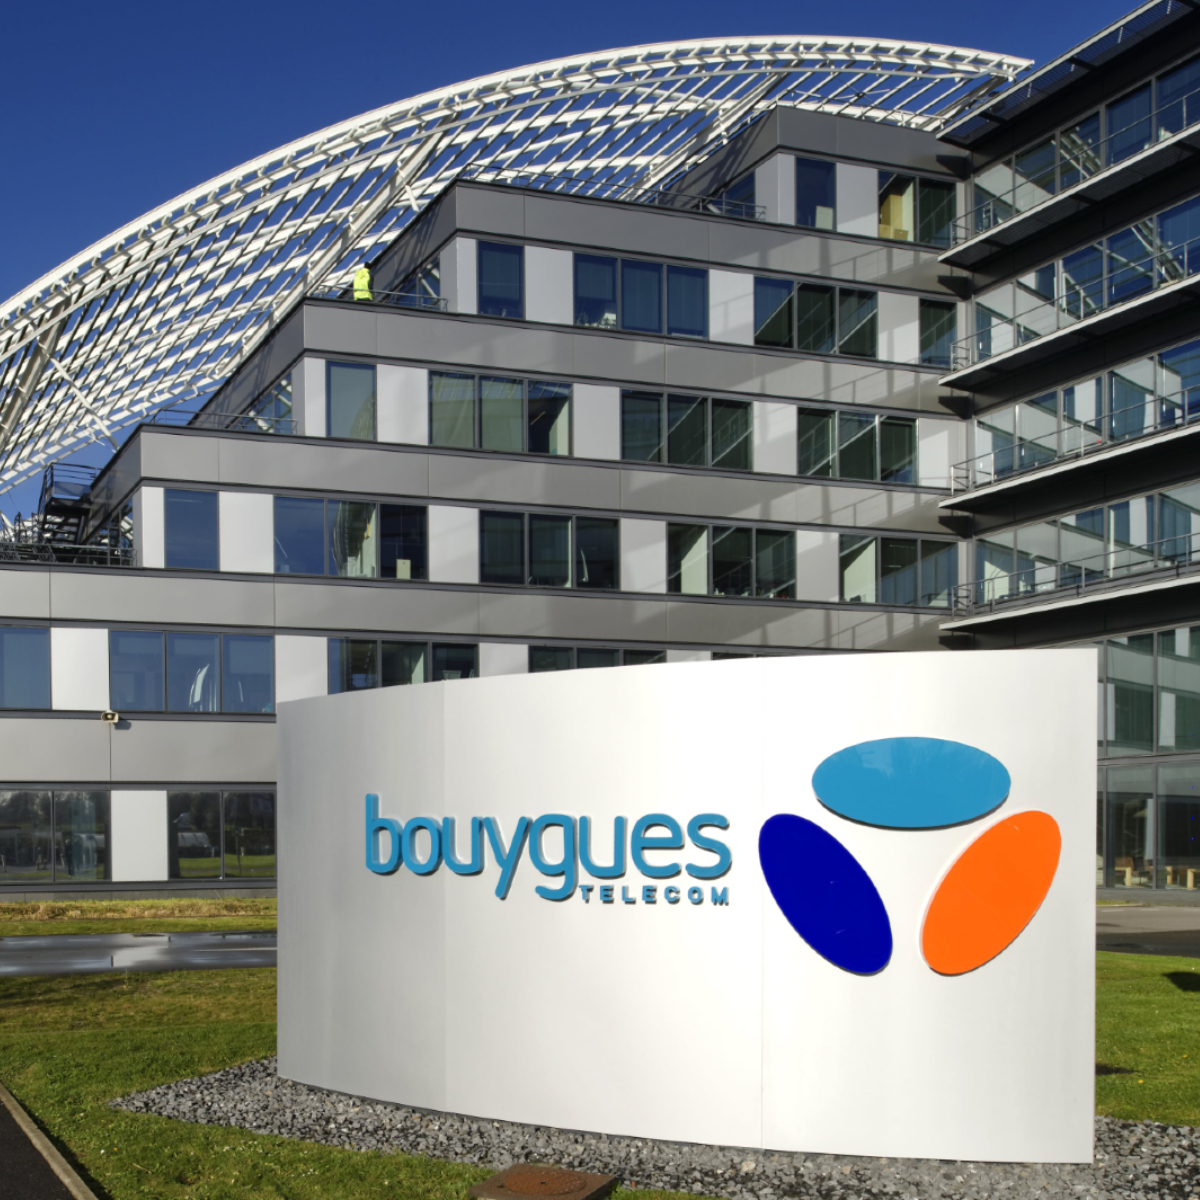 Bouygues Telecom : clients mobile et fixe, chiffres d'affaires... une année 2019 réussie